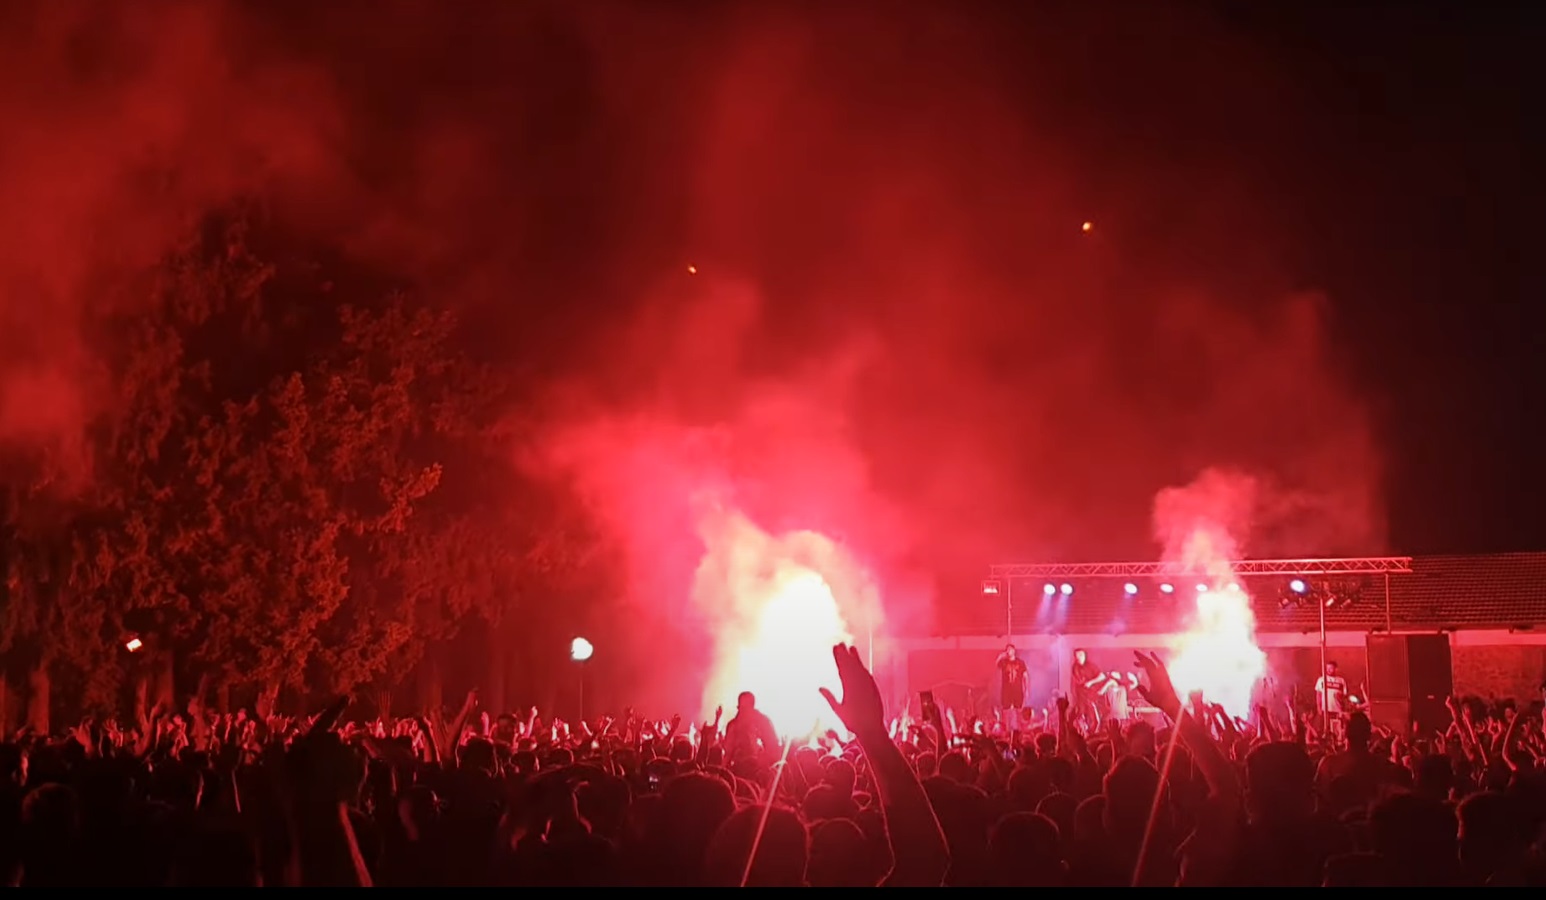 Πλήθος κόσμου σε συναυλία στο Σκοπευτήριο Καισαριανής αψηφώντας τα μέτρα - Τέσσερις συλλήψεις [βίντεο]